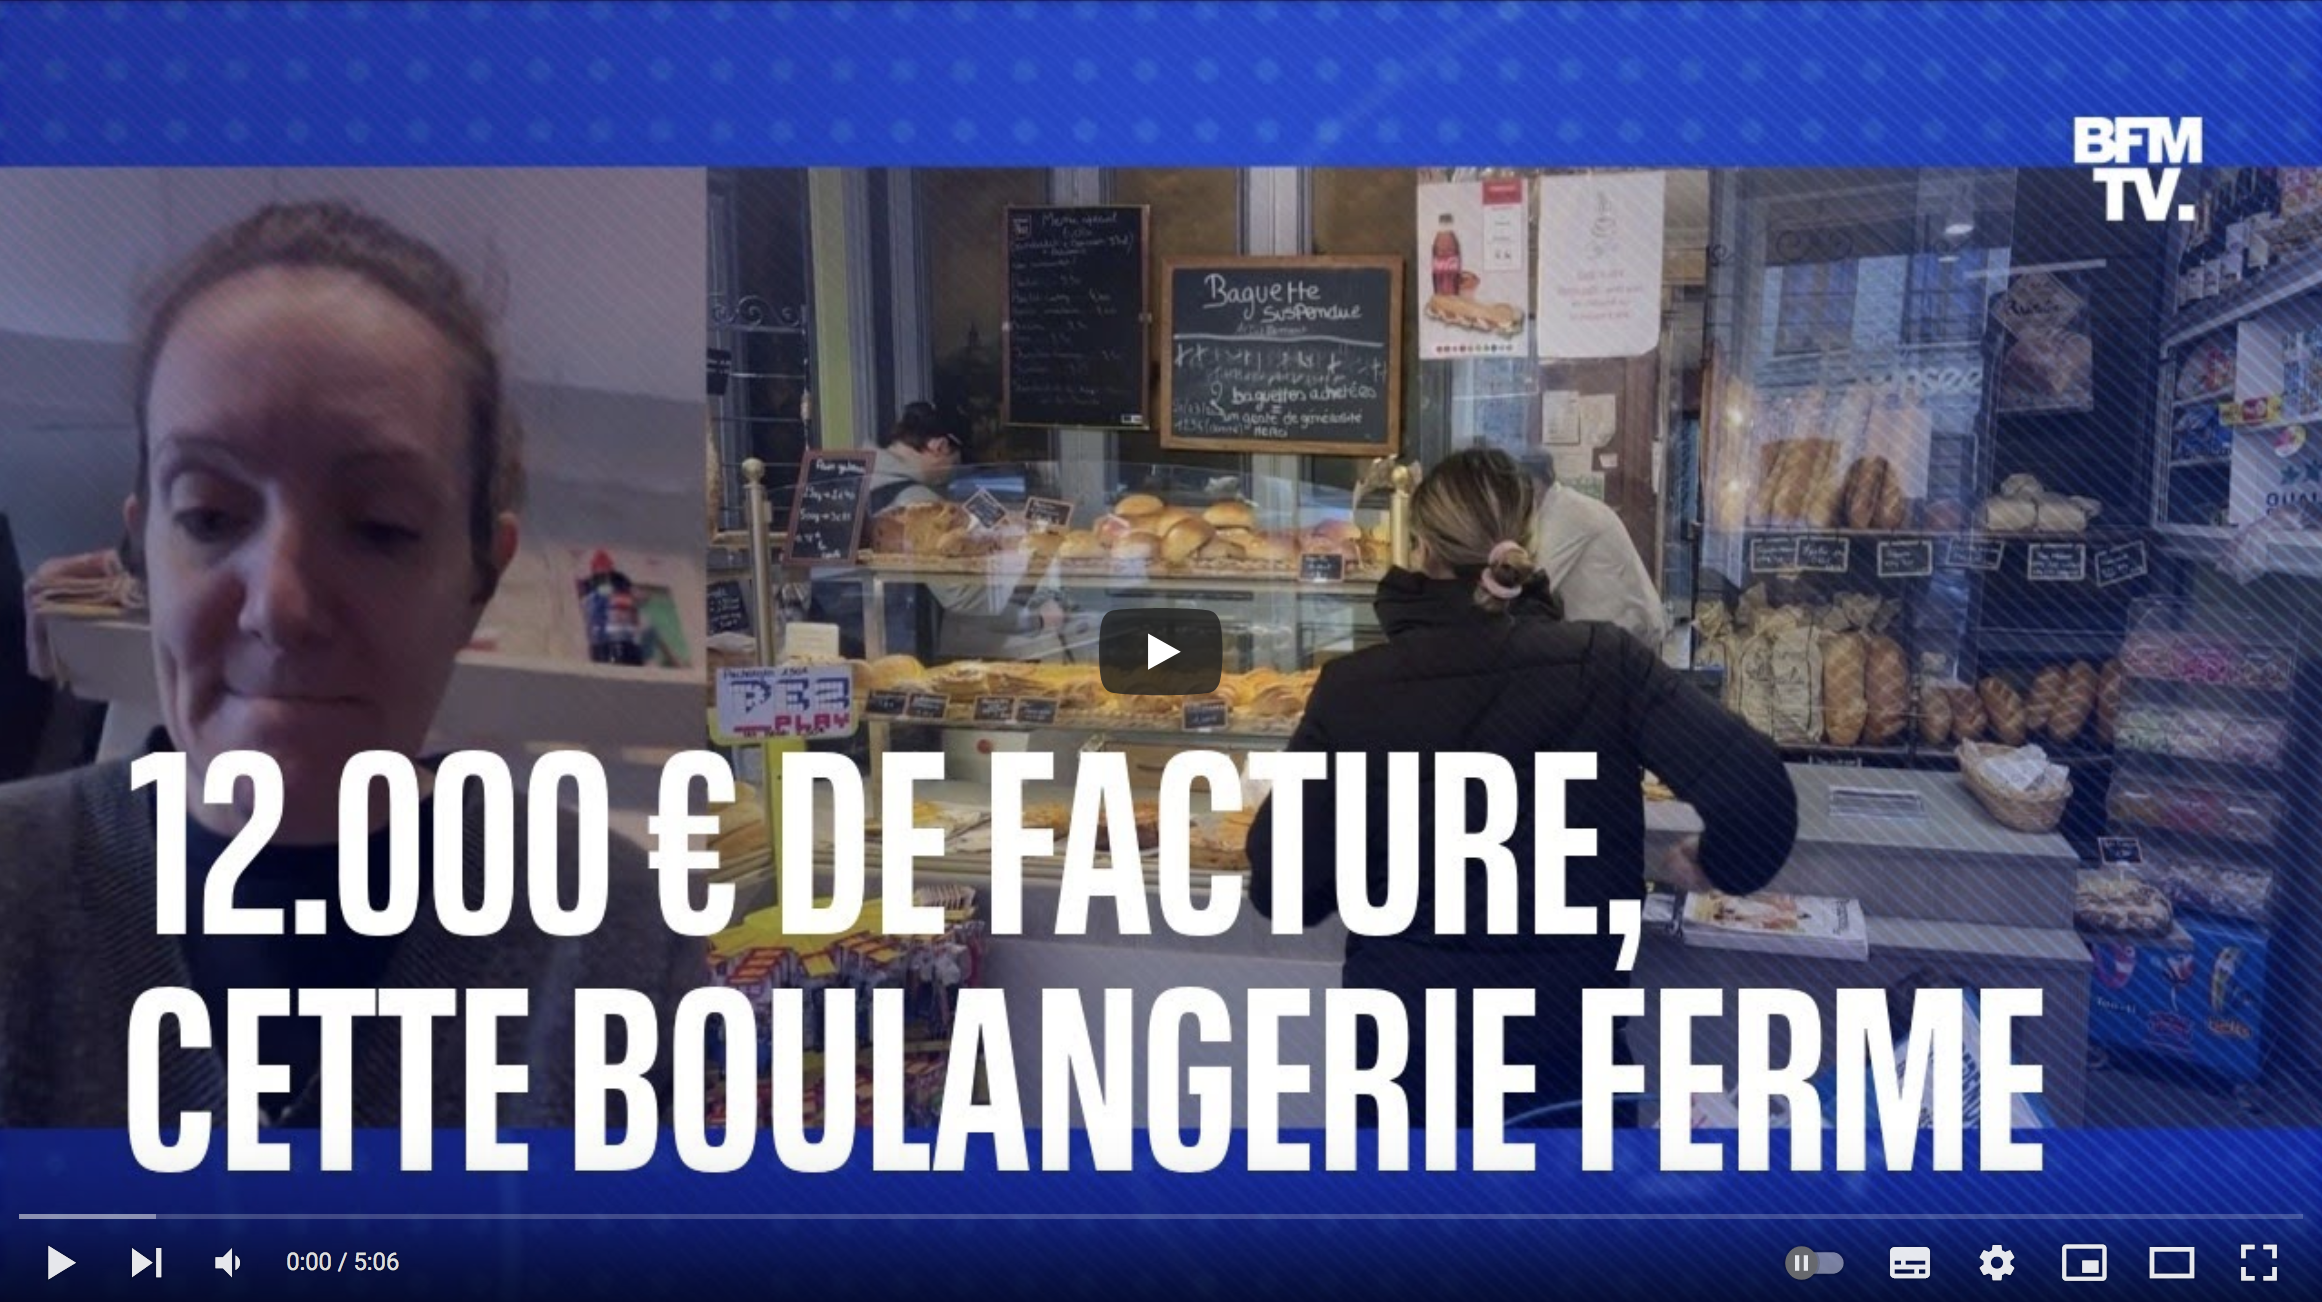 Côtes-d’Armor : elle ferme sa boulangerie à cause d’une facture d’électricité de 12 000€ (TÉMOIGNAGE)